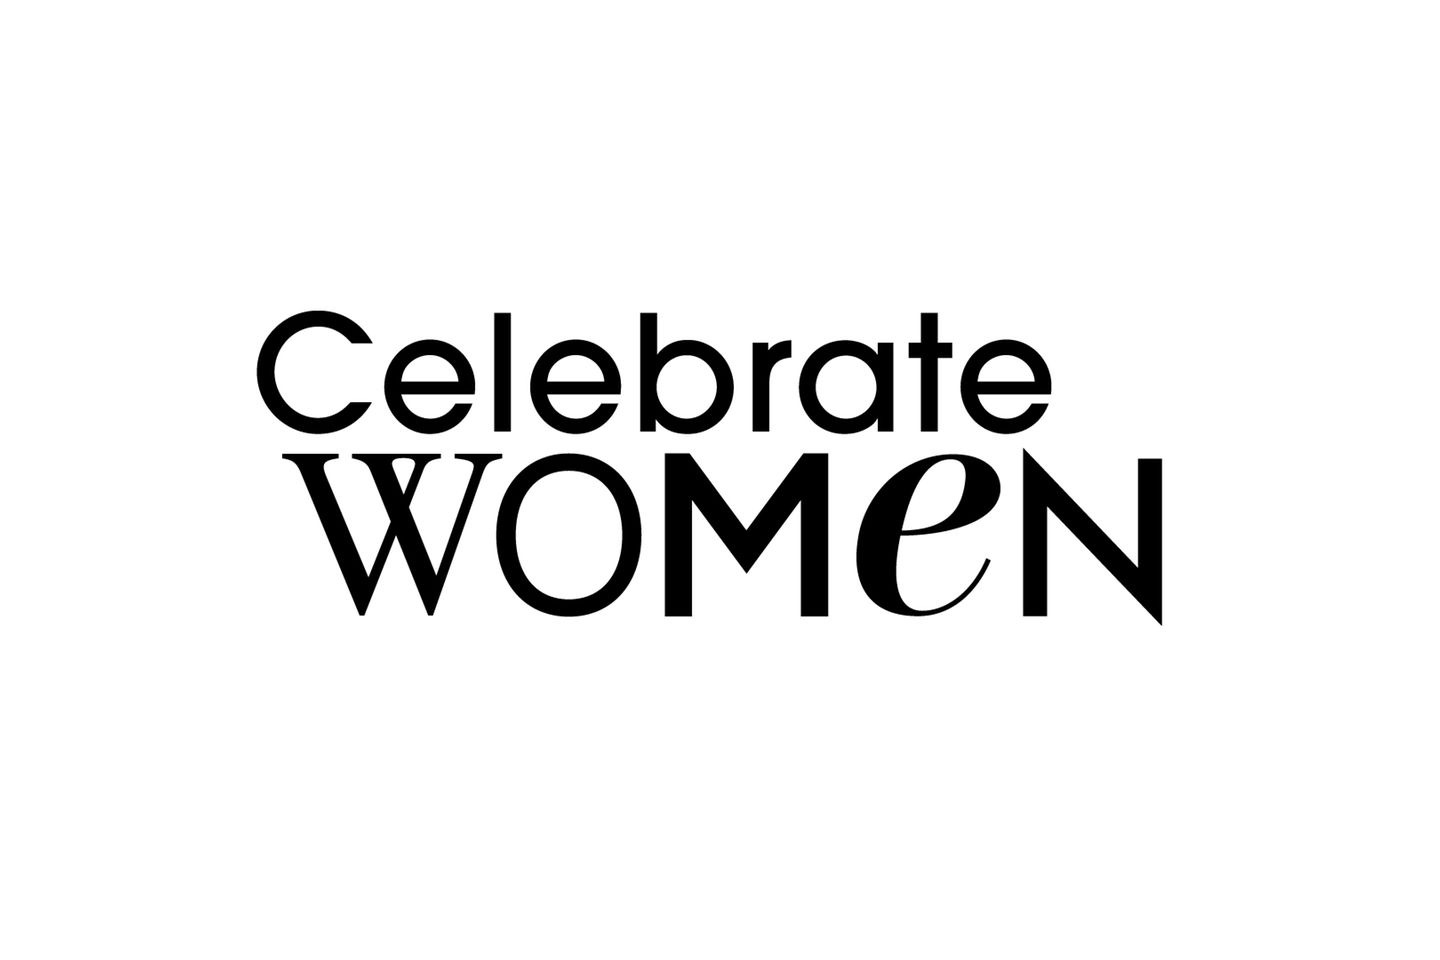 Celebrate Woman